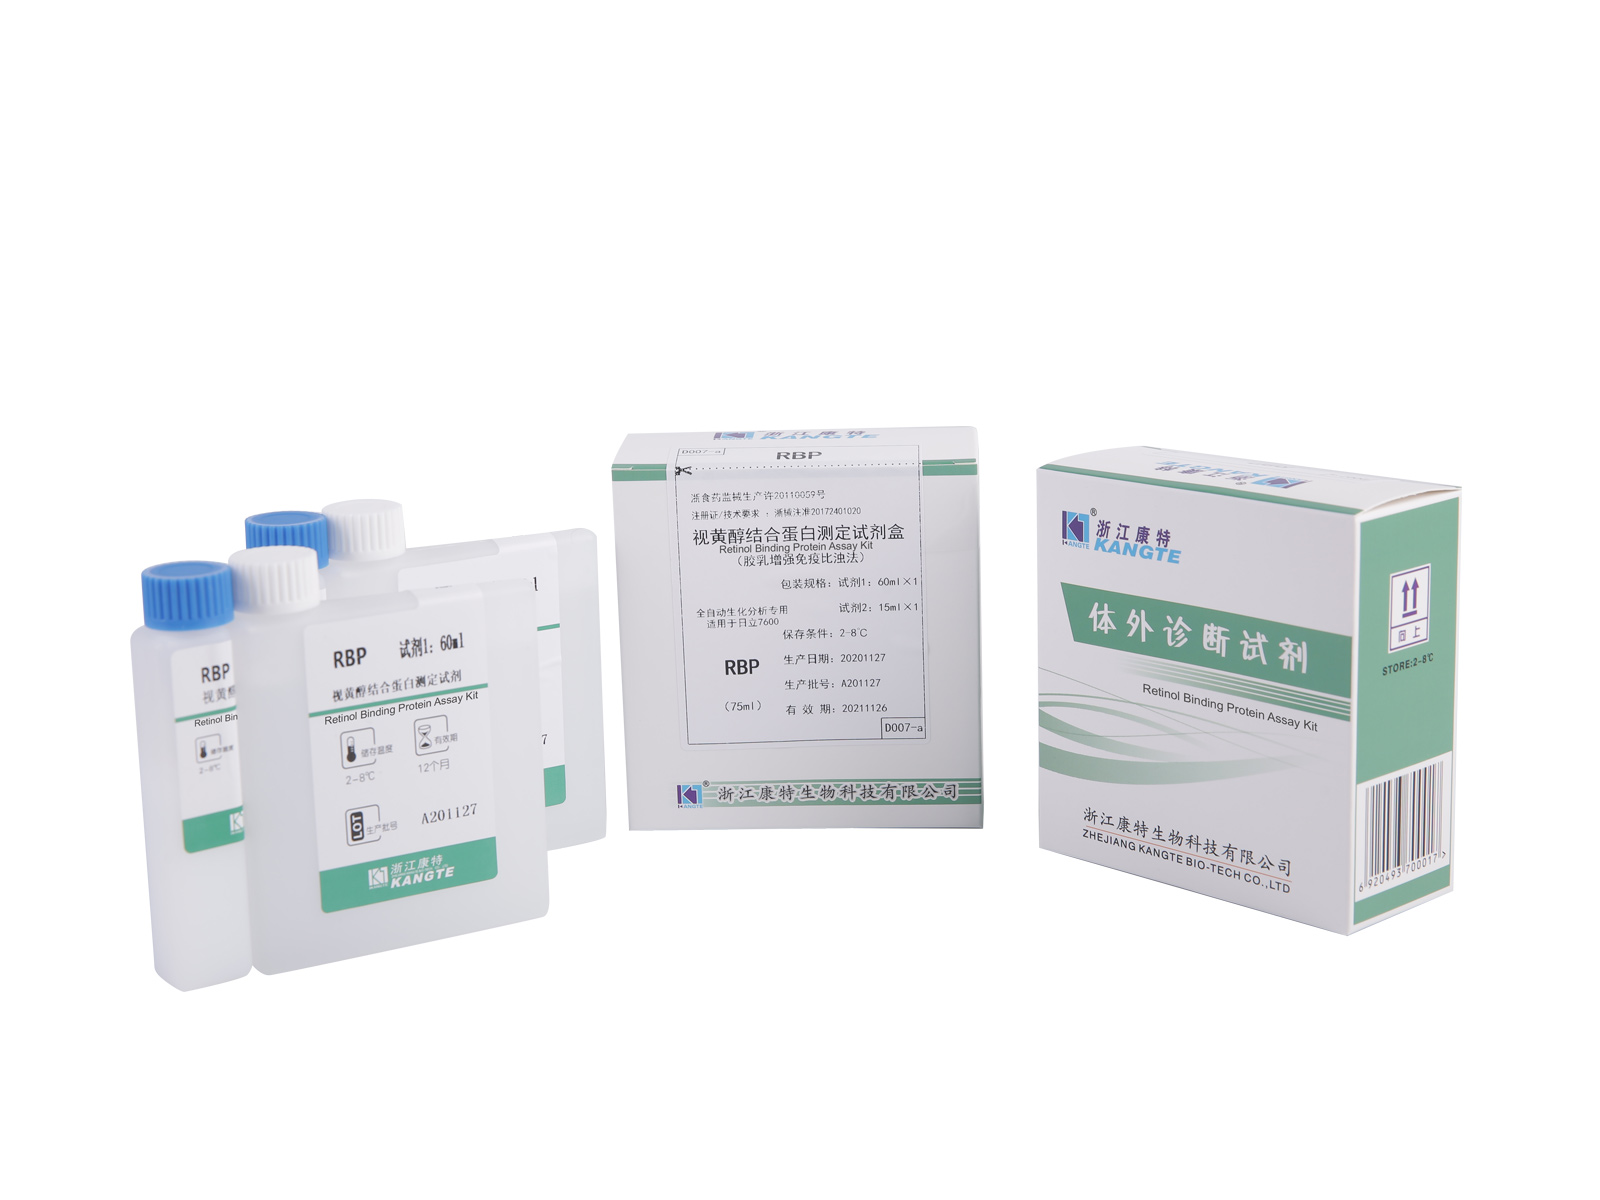 【RBP】 Kit de testare a proteinei de legare a retinolului (metoda imunoturbidimetrică îmbunătățită cu latex)